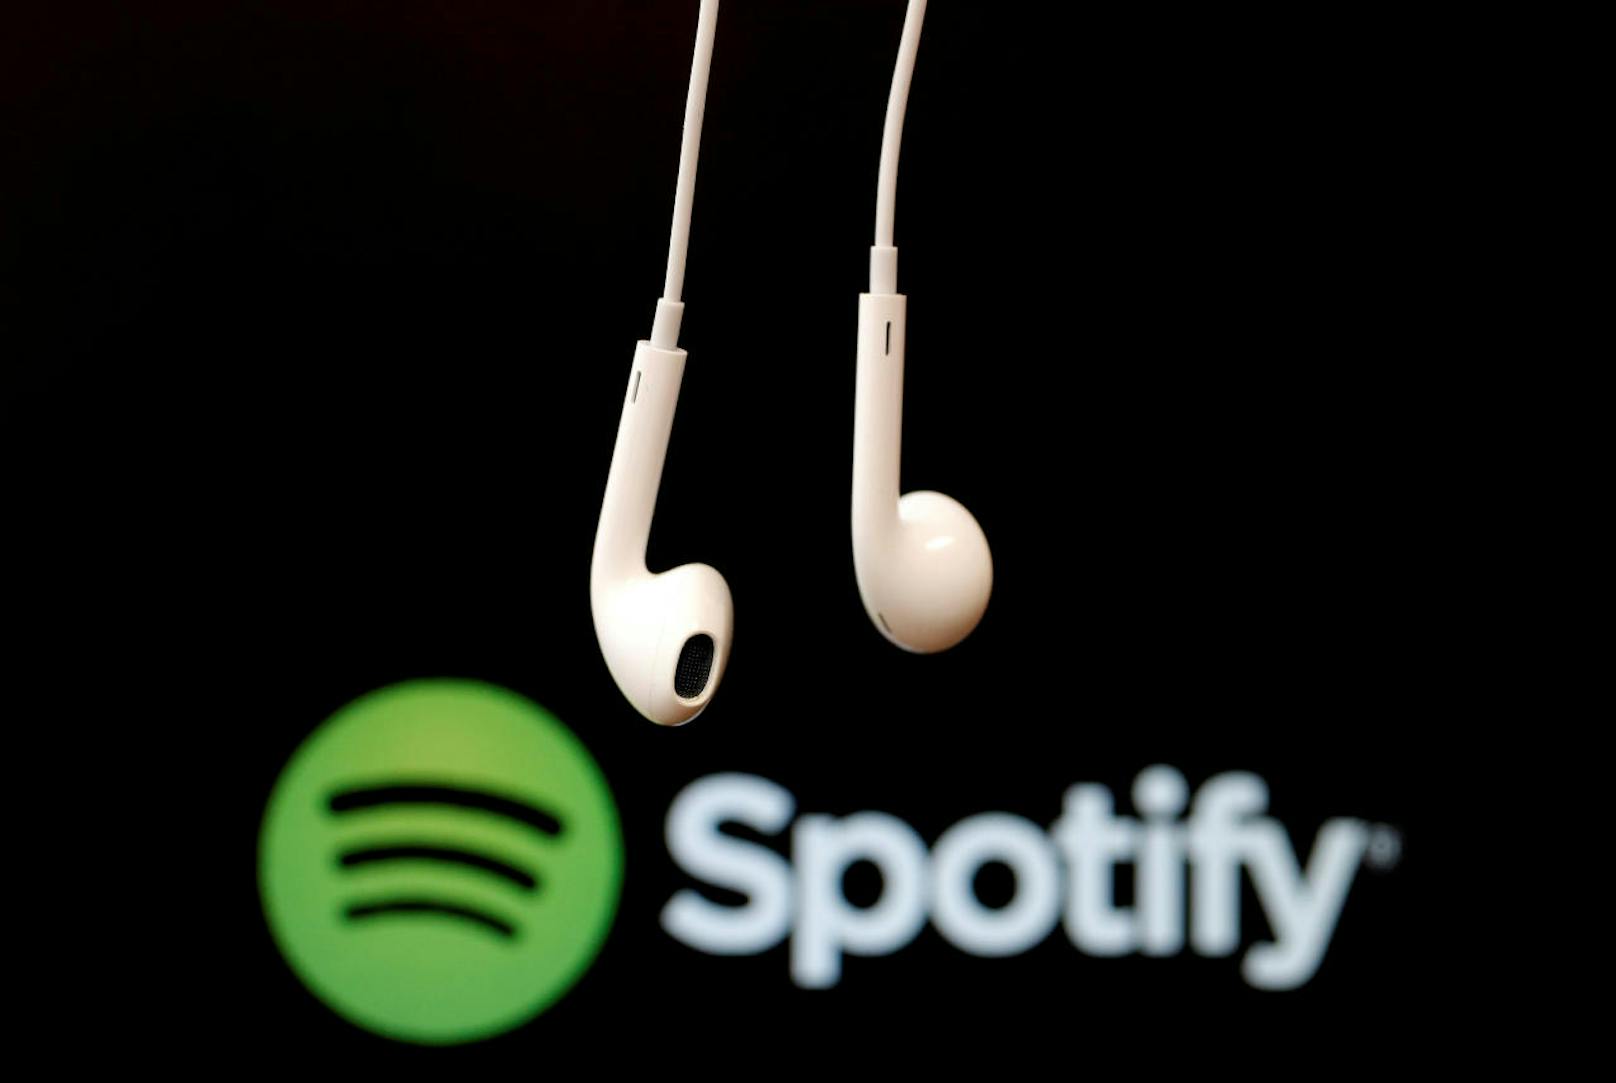 <b>12. Mai 2018:</b> Im ersten Q1-Earnings-Report nach dem Börsengang im April hat Spotify neue Nutzerzahlen bekannt gegeben. Der schwedische Musik Streaming Service hat jetzt 75 Millionen Spotify Premium-Abonnenten und insgesamt 170 Millionen aktive Nutzer weltweit.